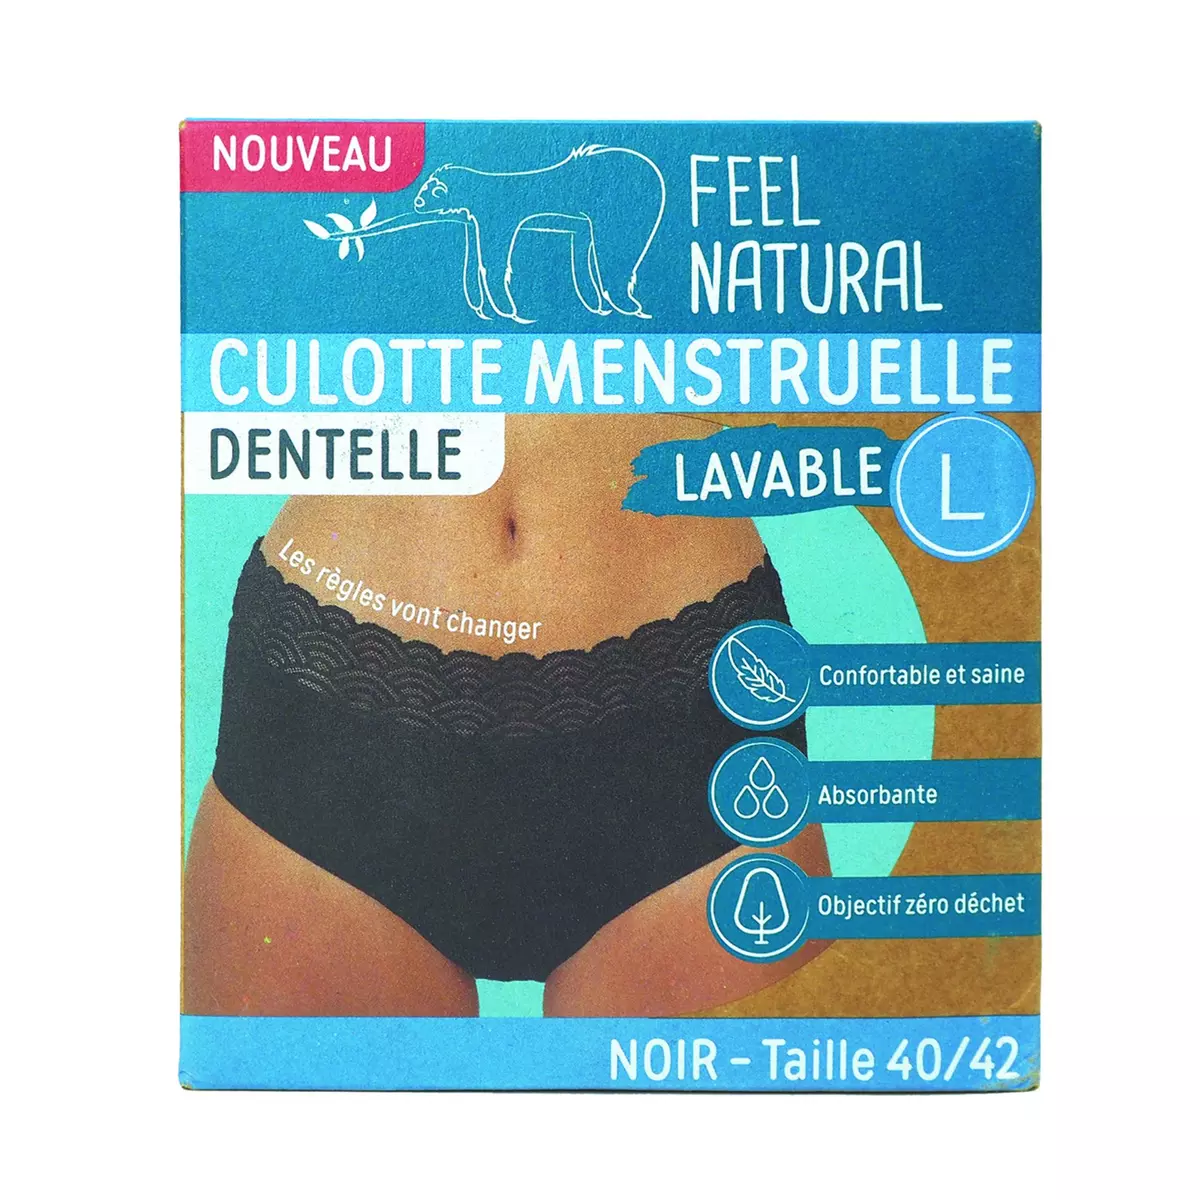 FEEL NATURAL Culotte menstruelle en dentelle noir lavable taille L 40-42 1 pièce